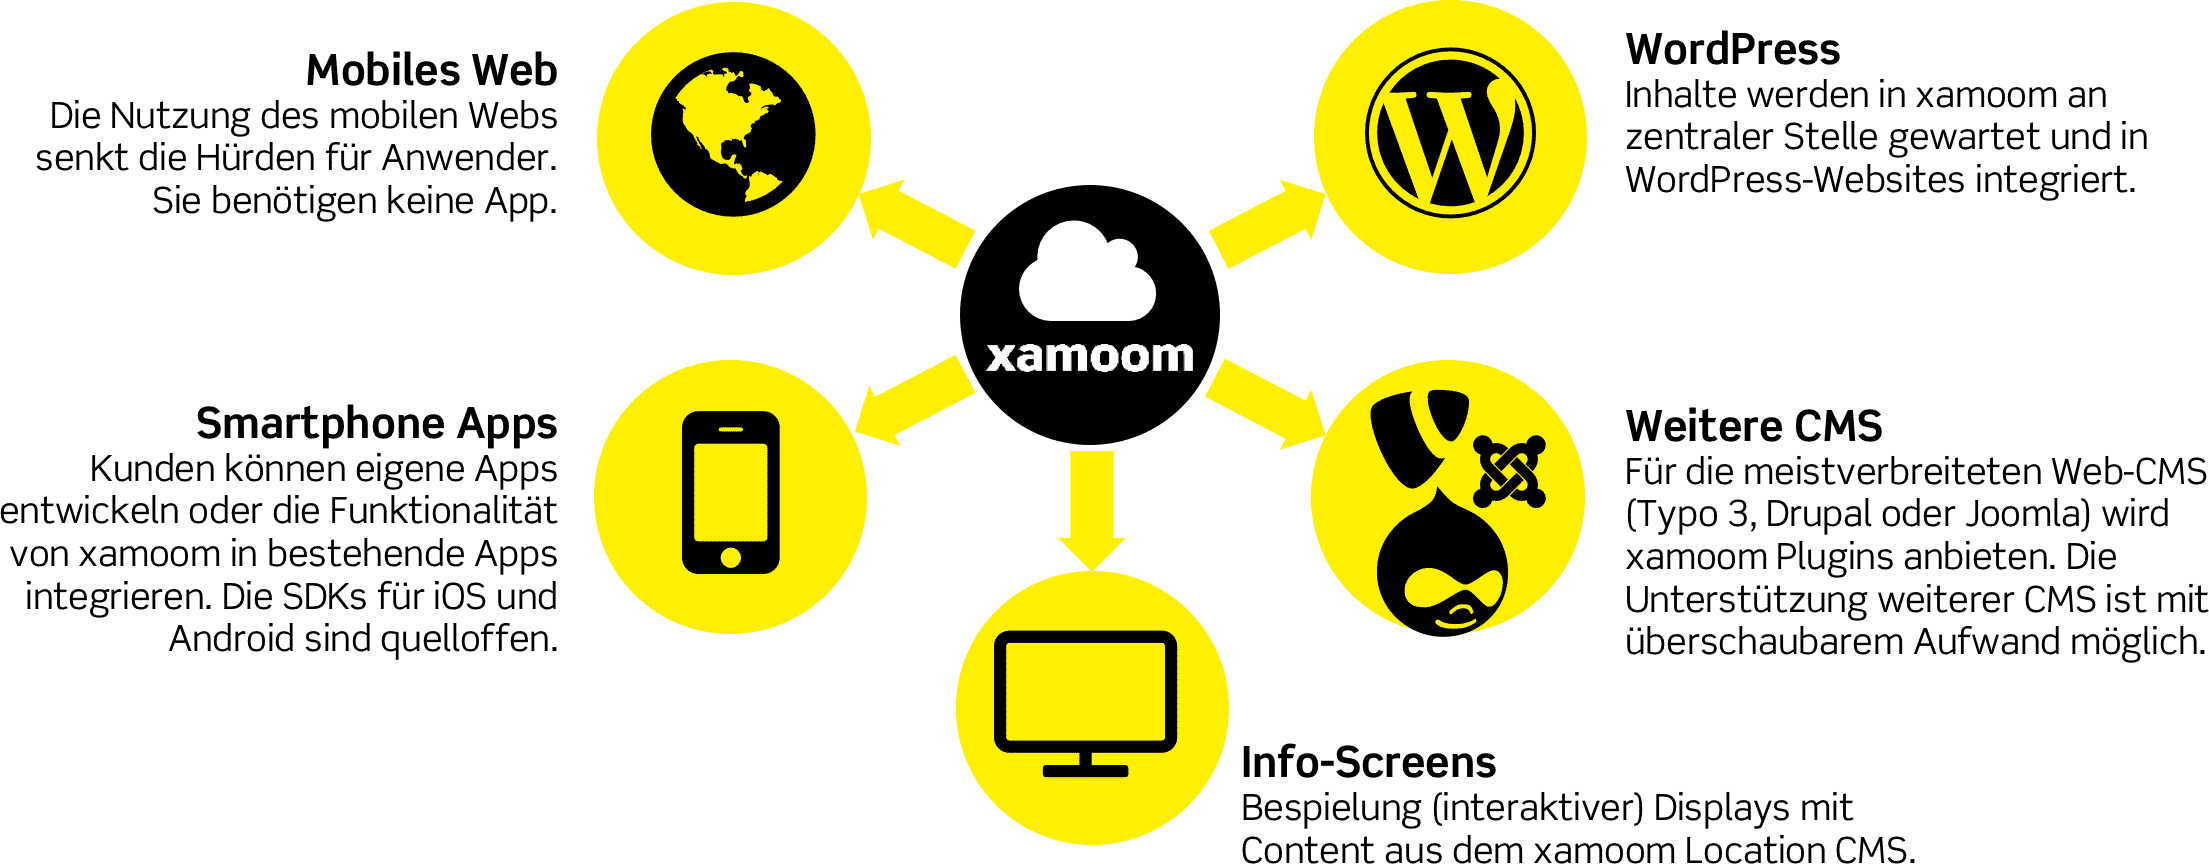 xamoom content hub: Ein CMS für alle Plattformen